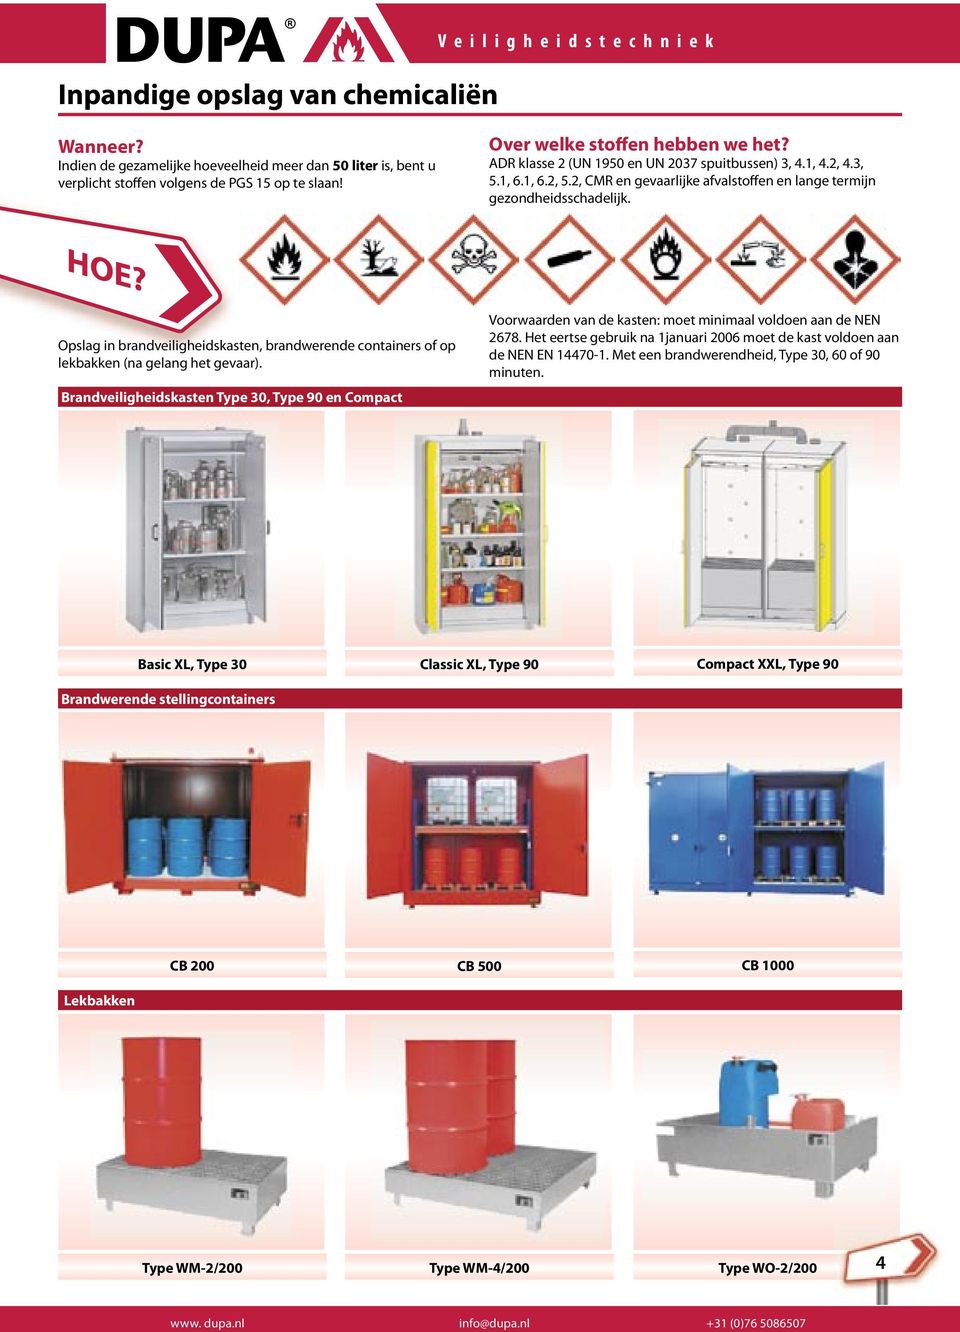 Opslag in brandveiligheidskasten, brandwerende containers of op lekbakken (na gelang het gevaar).